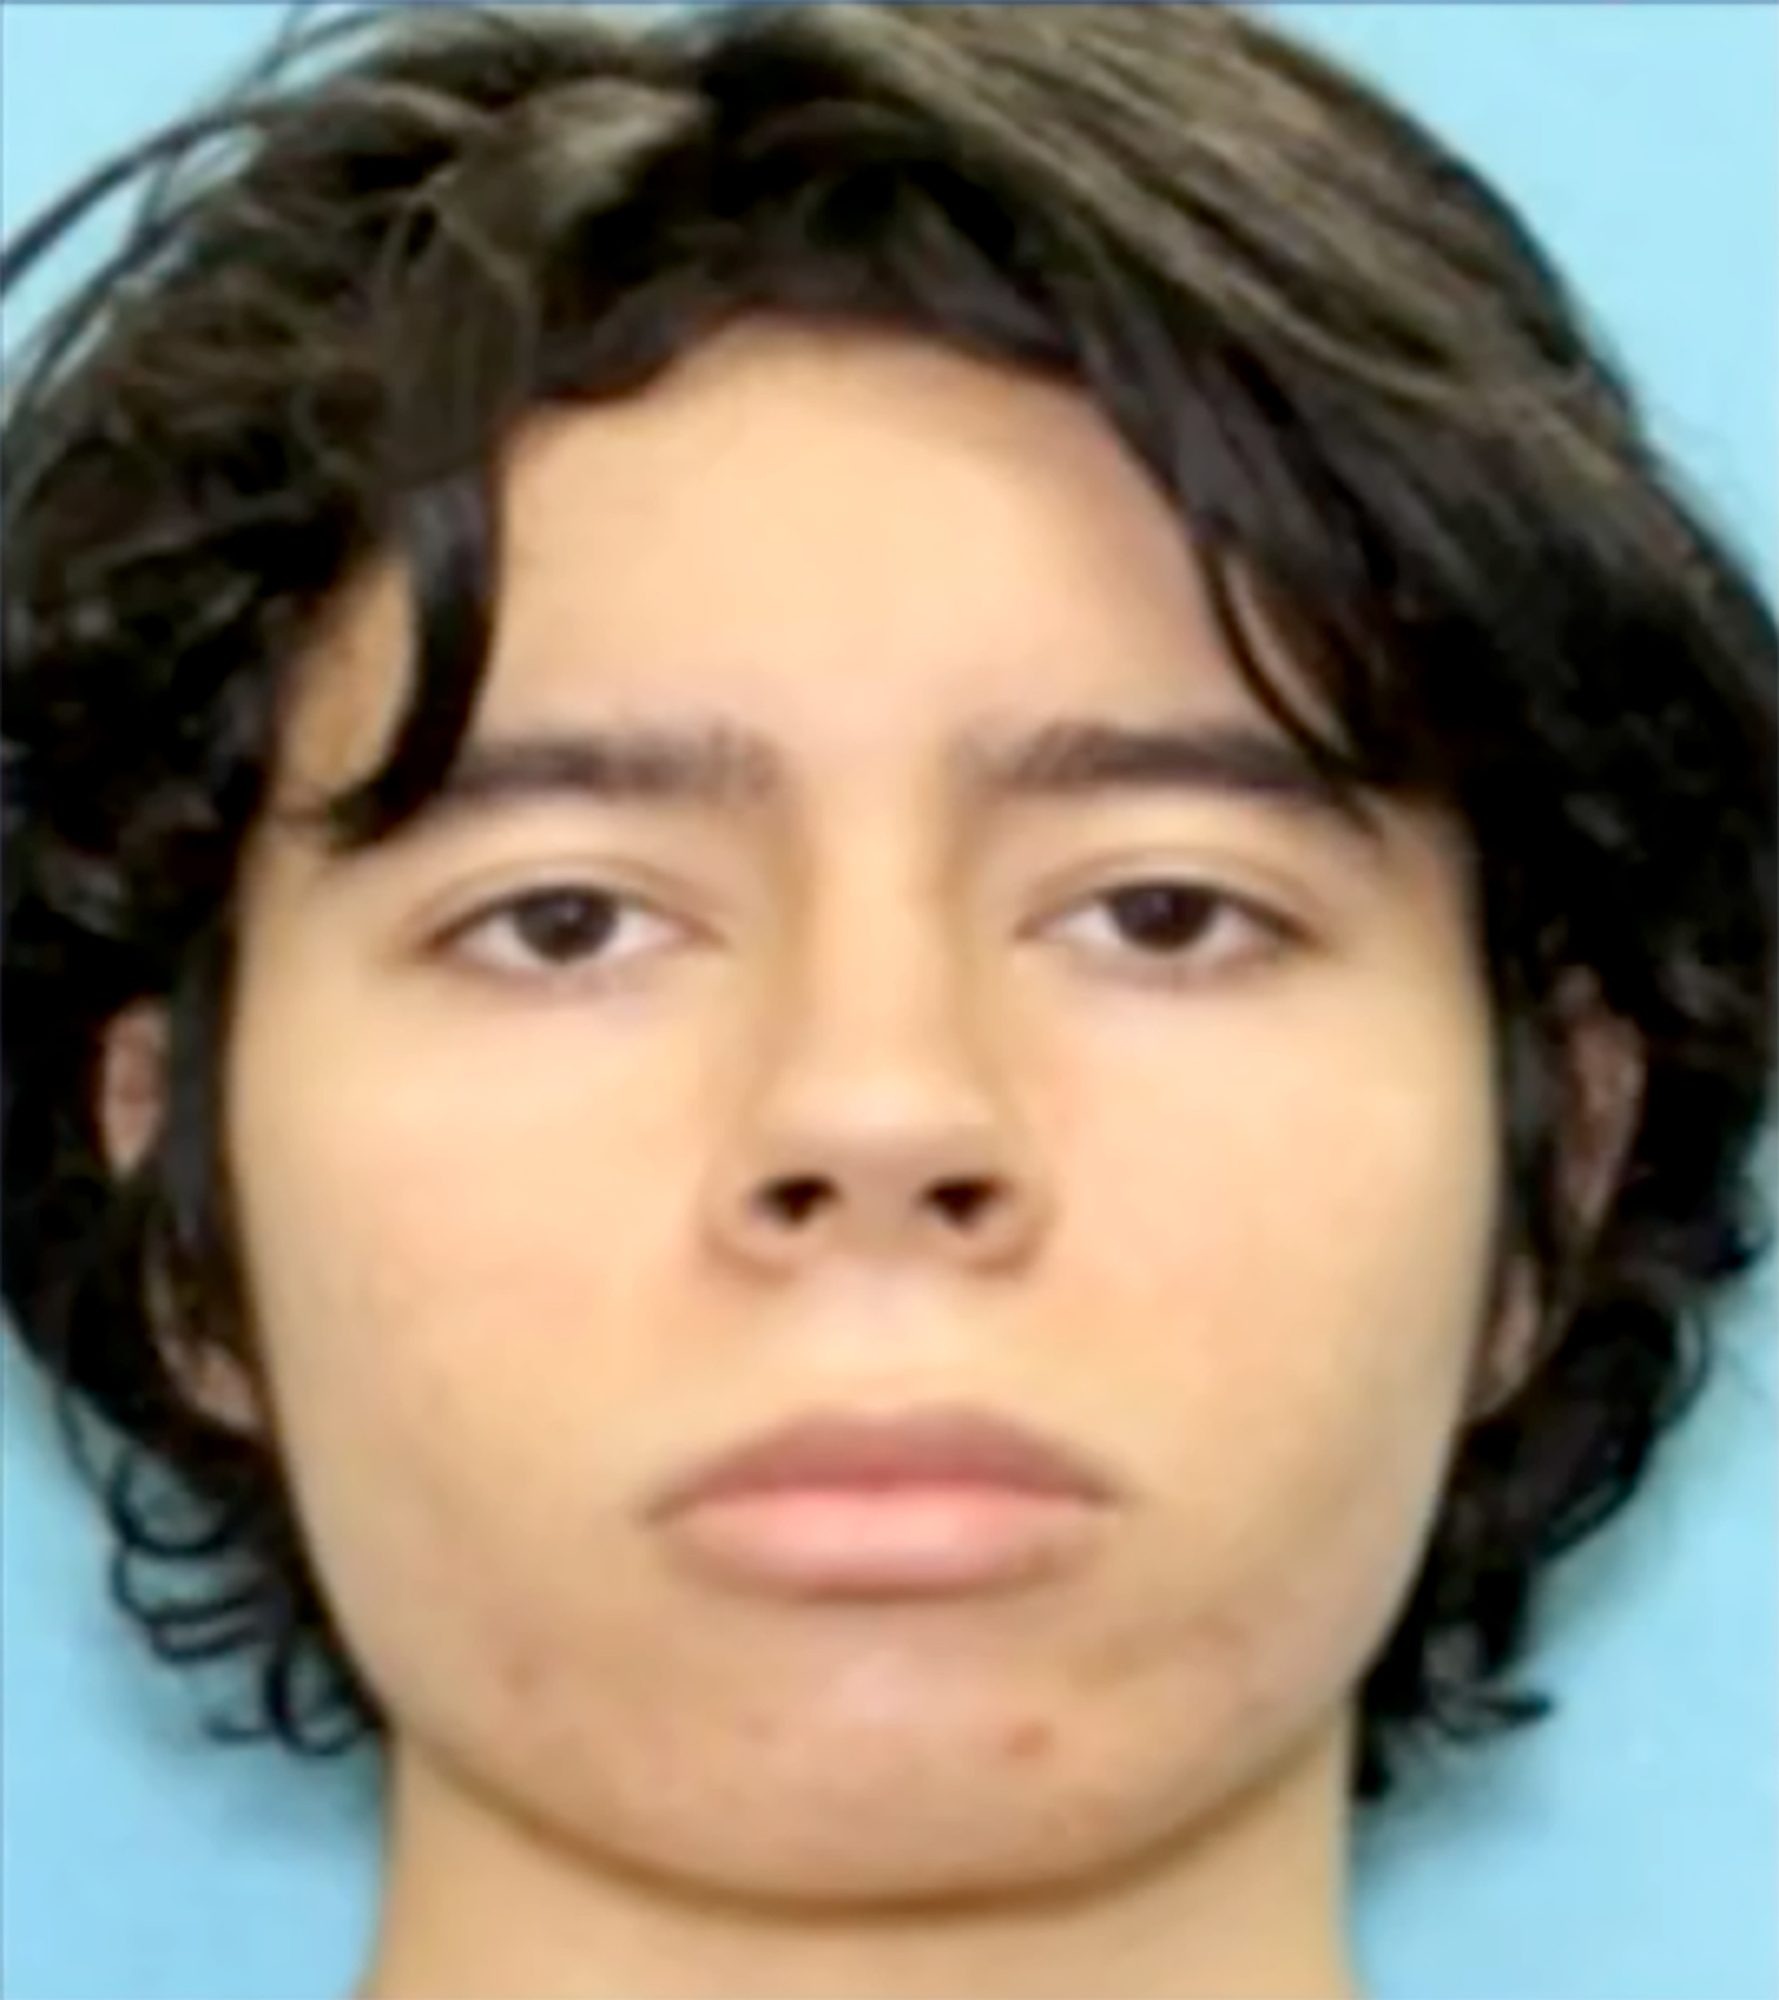 Salvador Ramos: de adolescente perturbado a autor de masacre en escuela